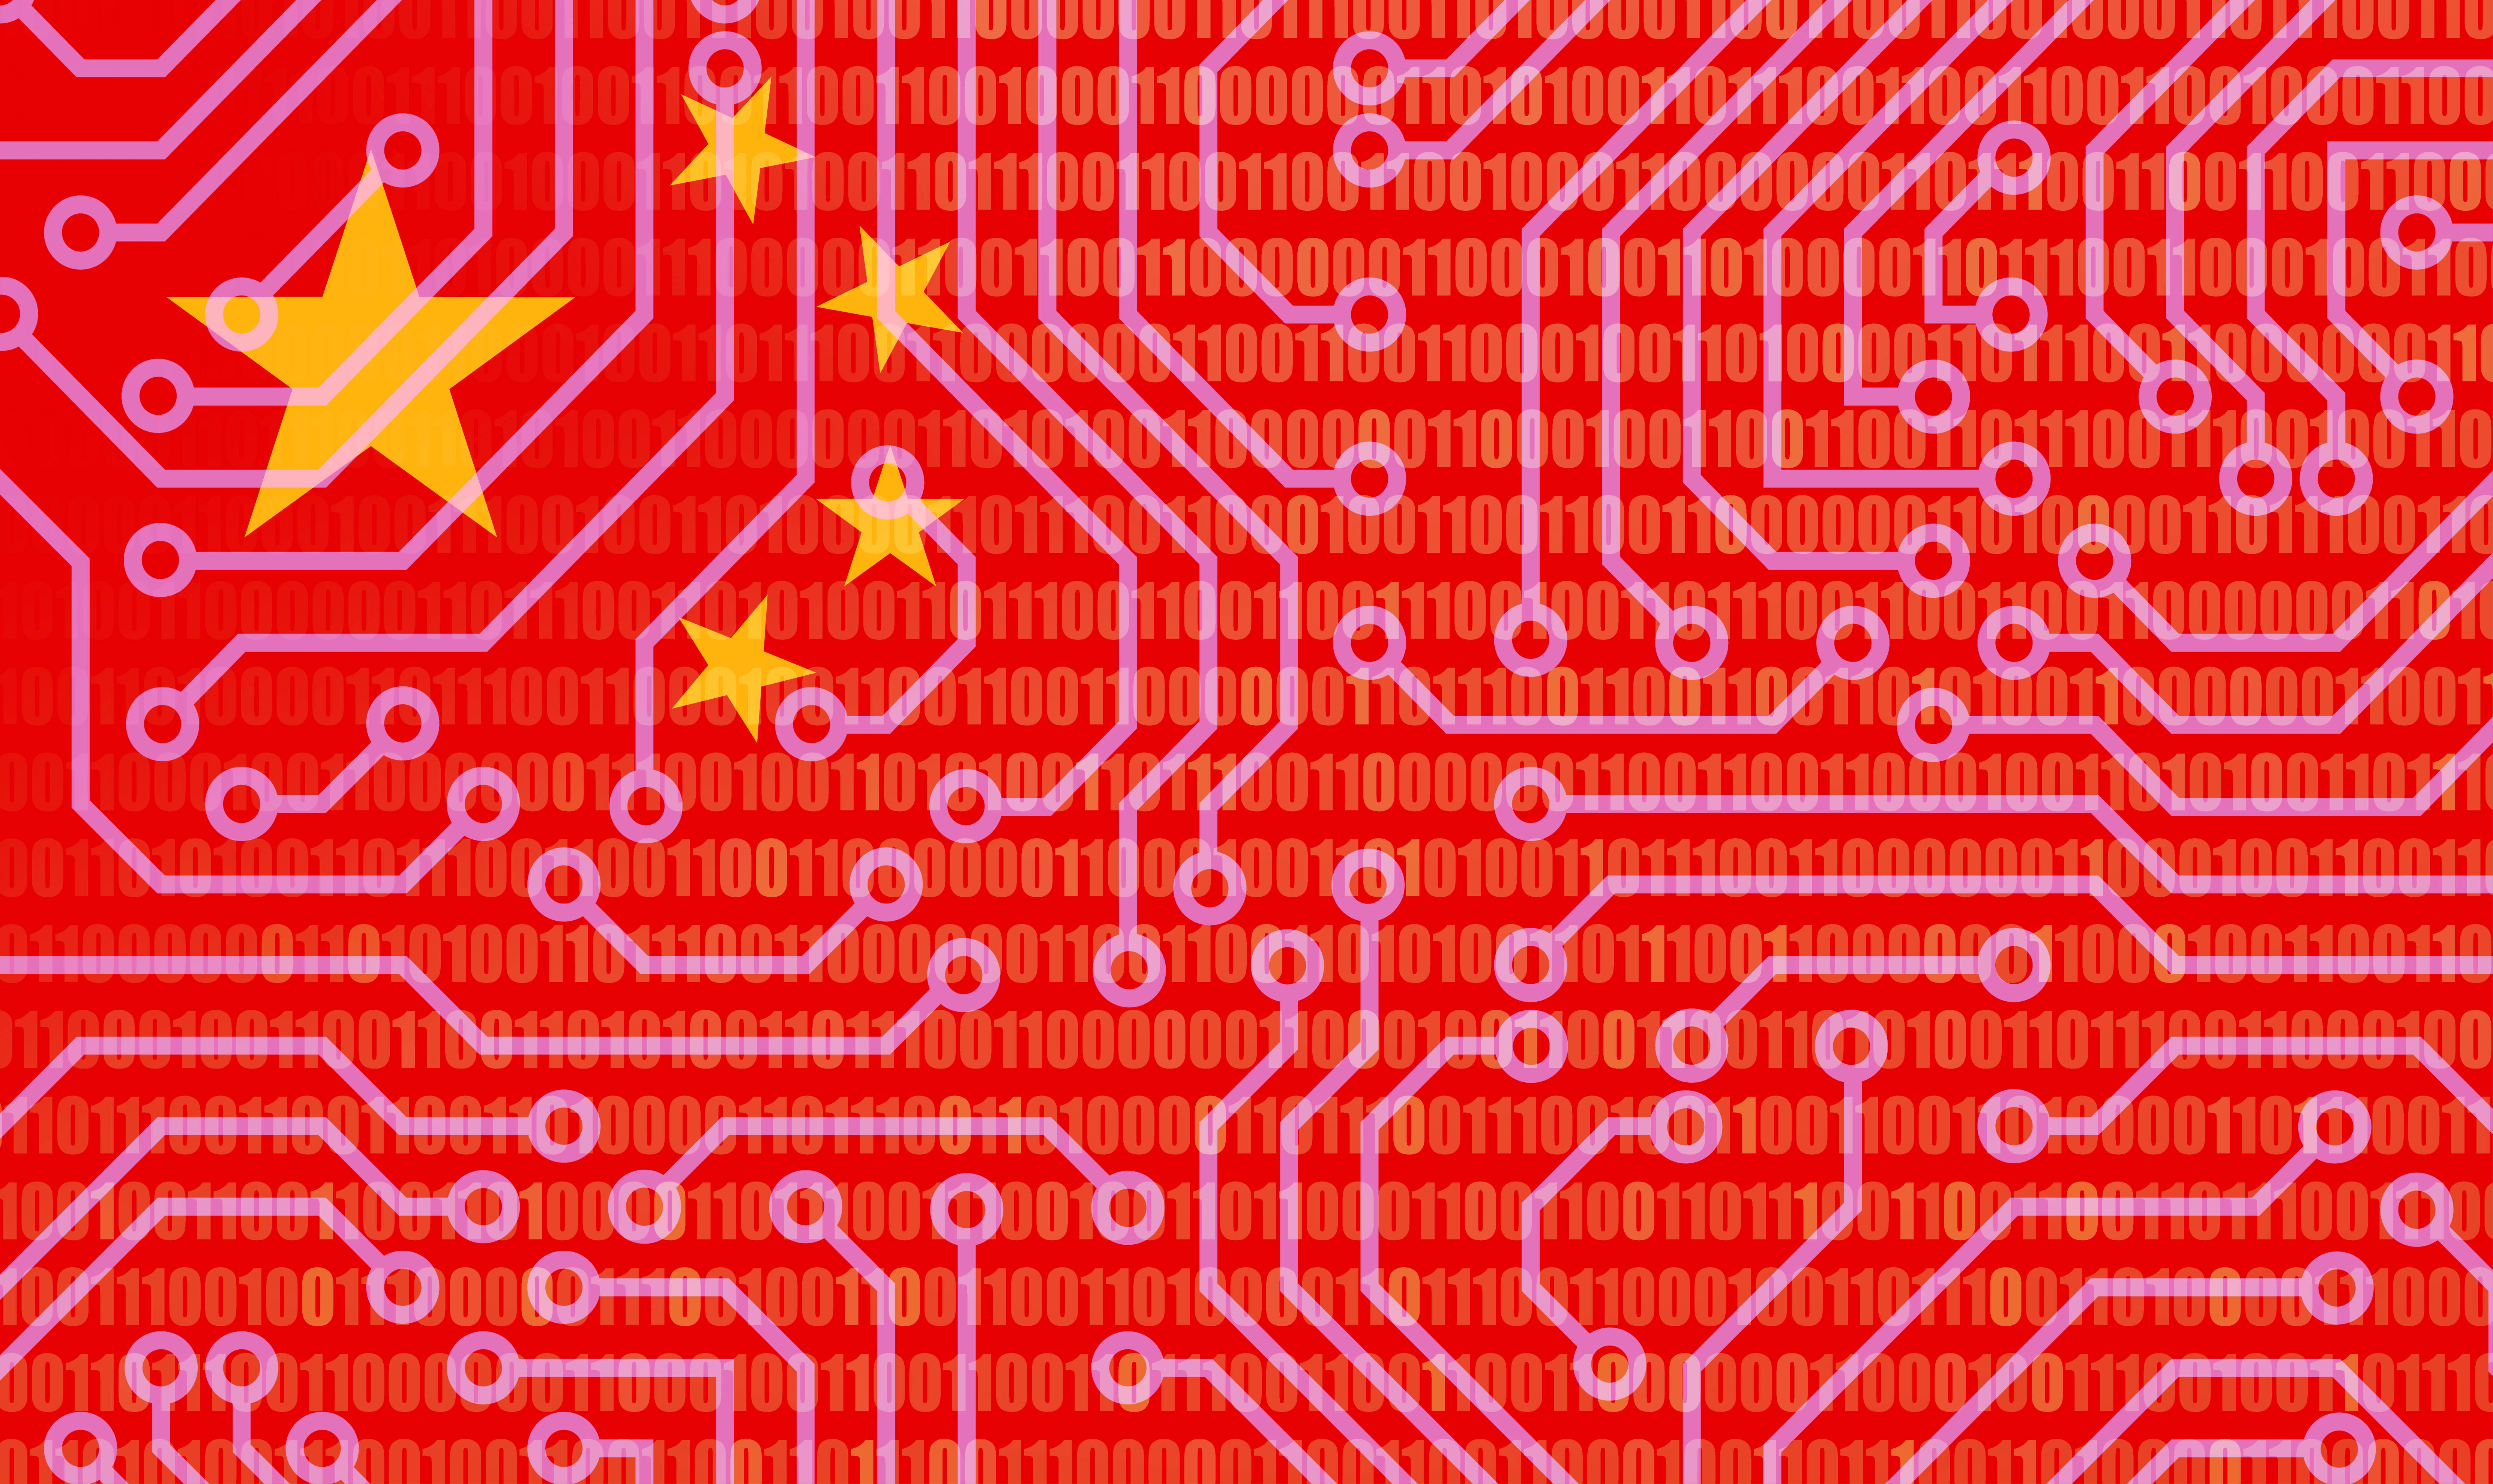 Chiny zwiększą moc obliczeniową o 50 procent dzięki wyścigowi sztucznej inteligencji z USA